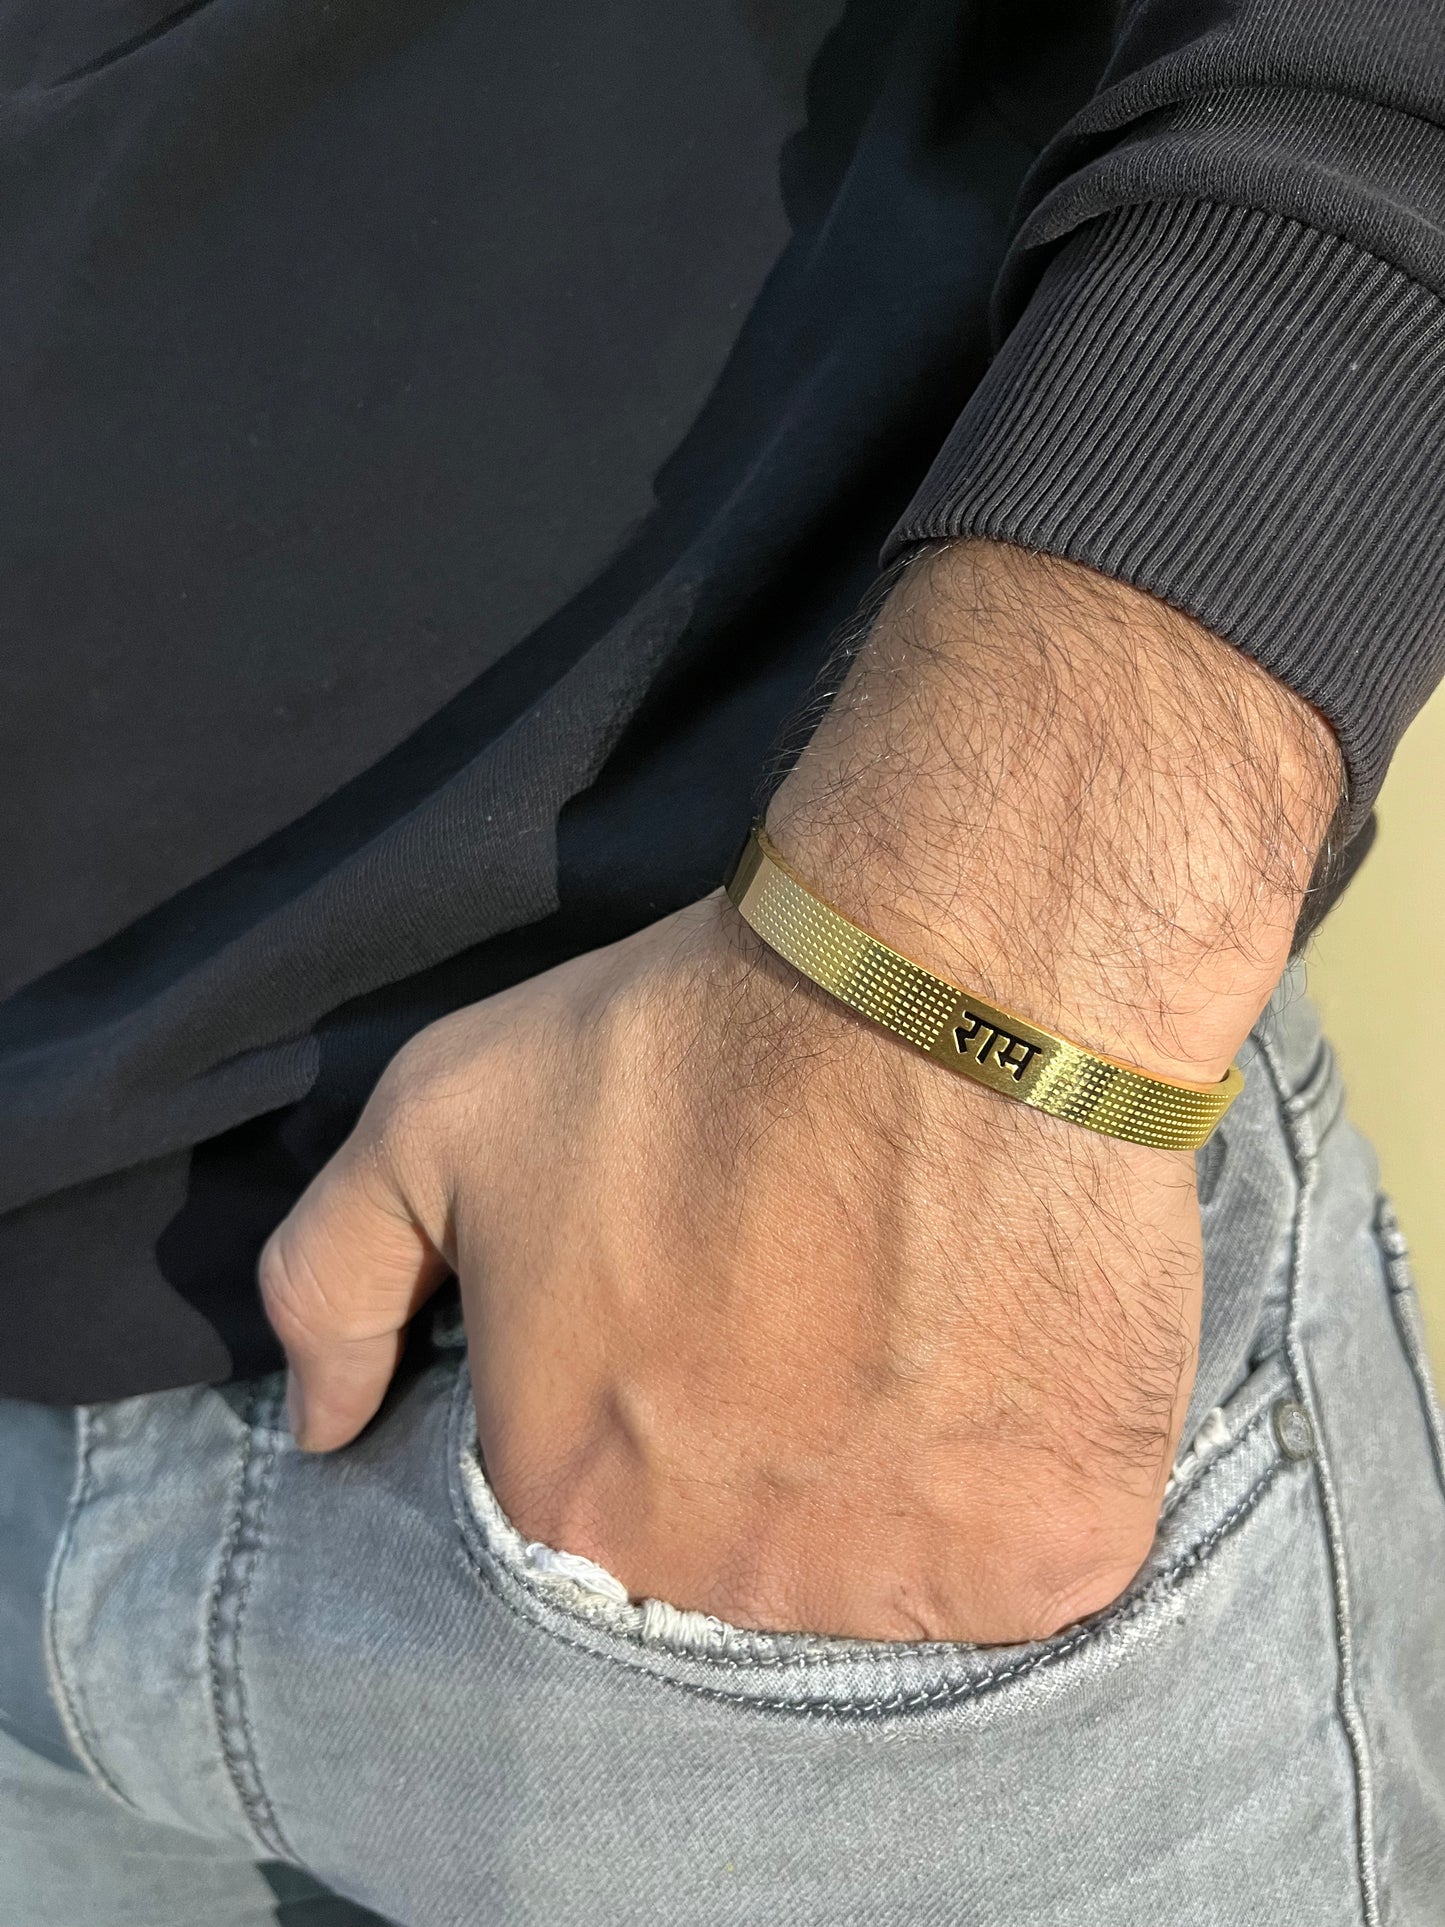 Black Divine Ram Bracelet- Gold Plated for Men & Women